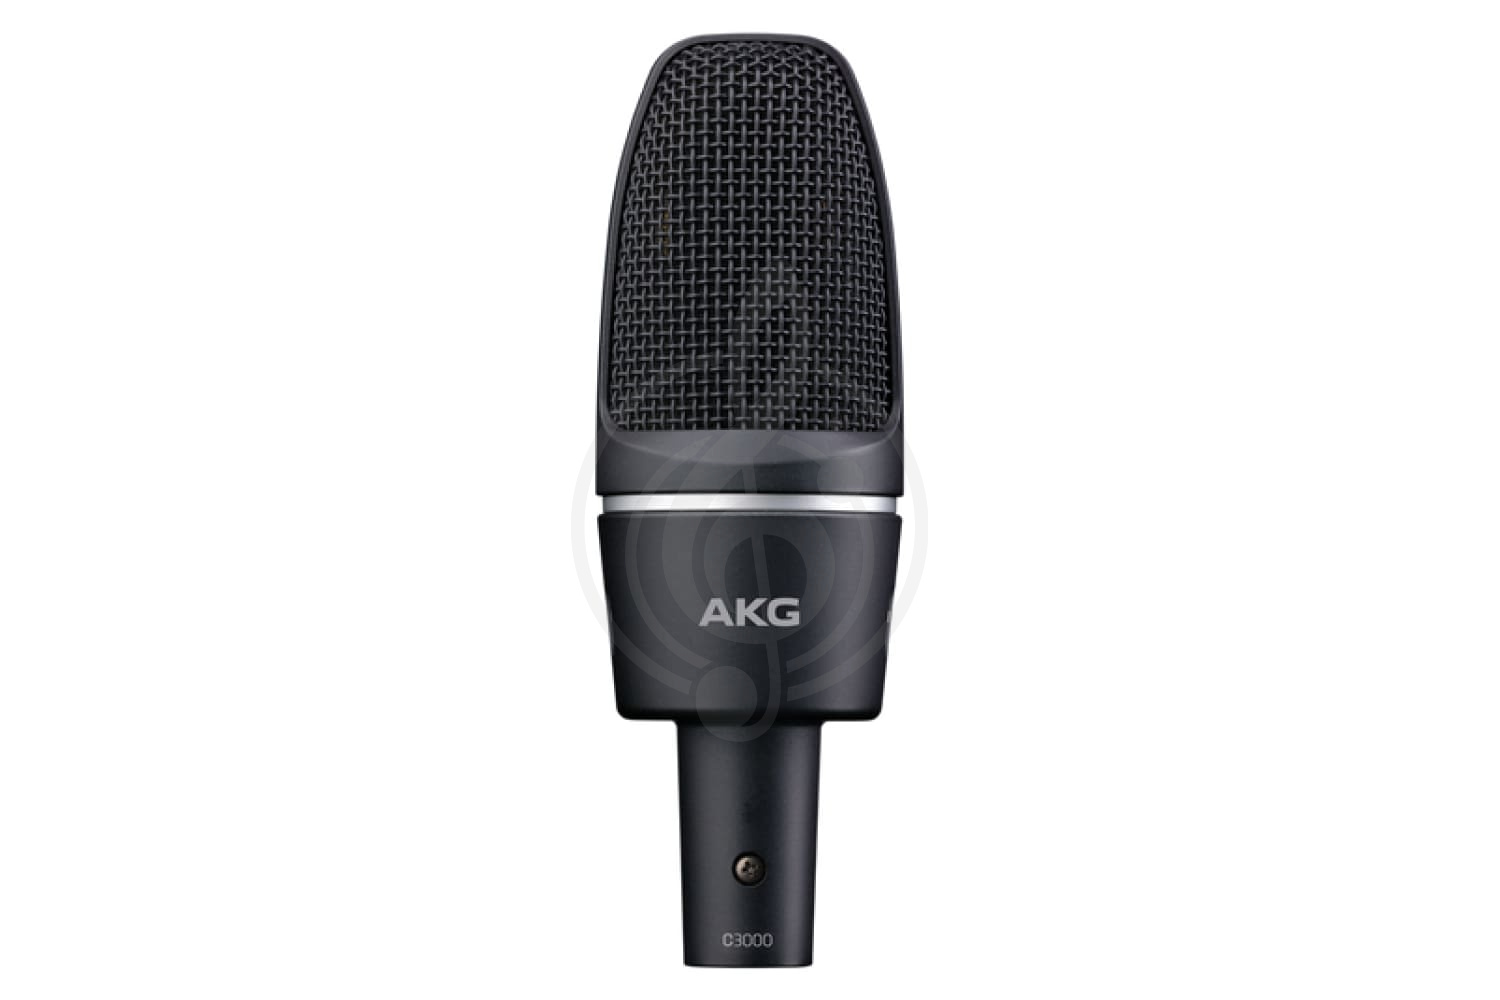 Конденсаторный студийный микрофон Конденсаторные студийные микрофоны AKG AKG C3000 - конденсаторный студийный микрофон C3000 - фото 1